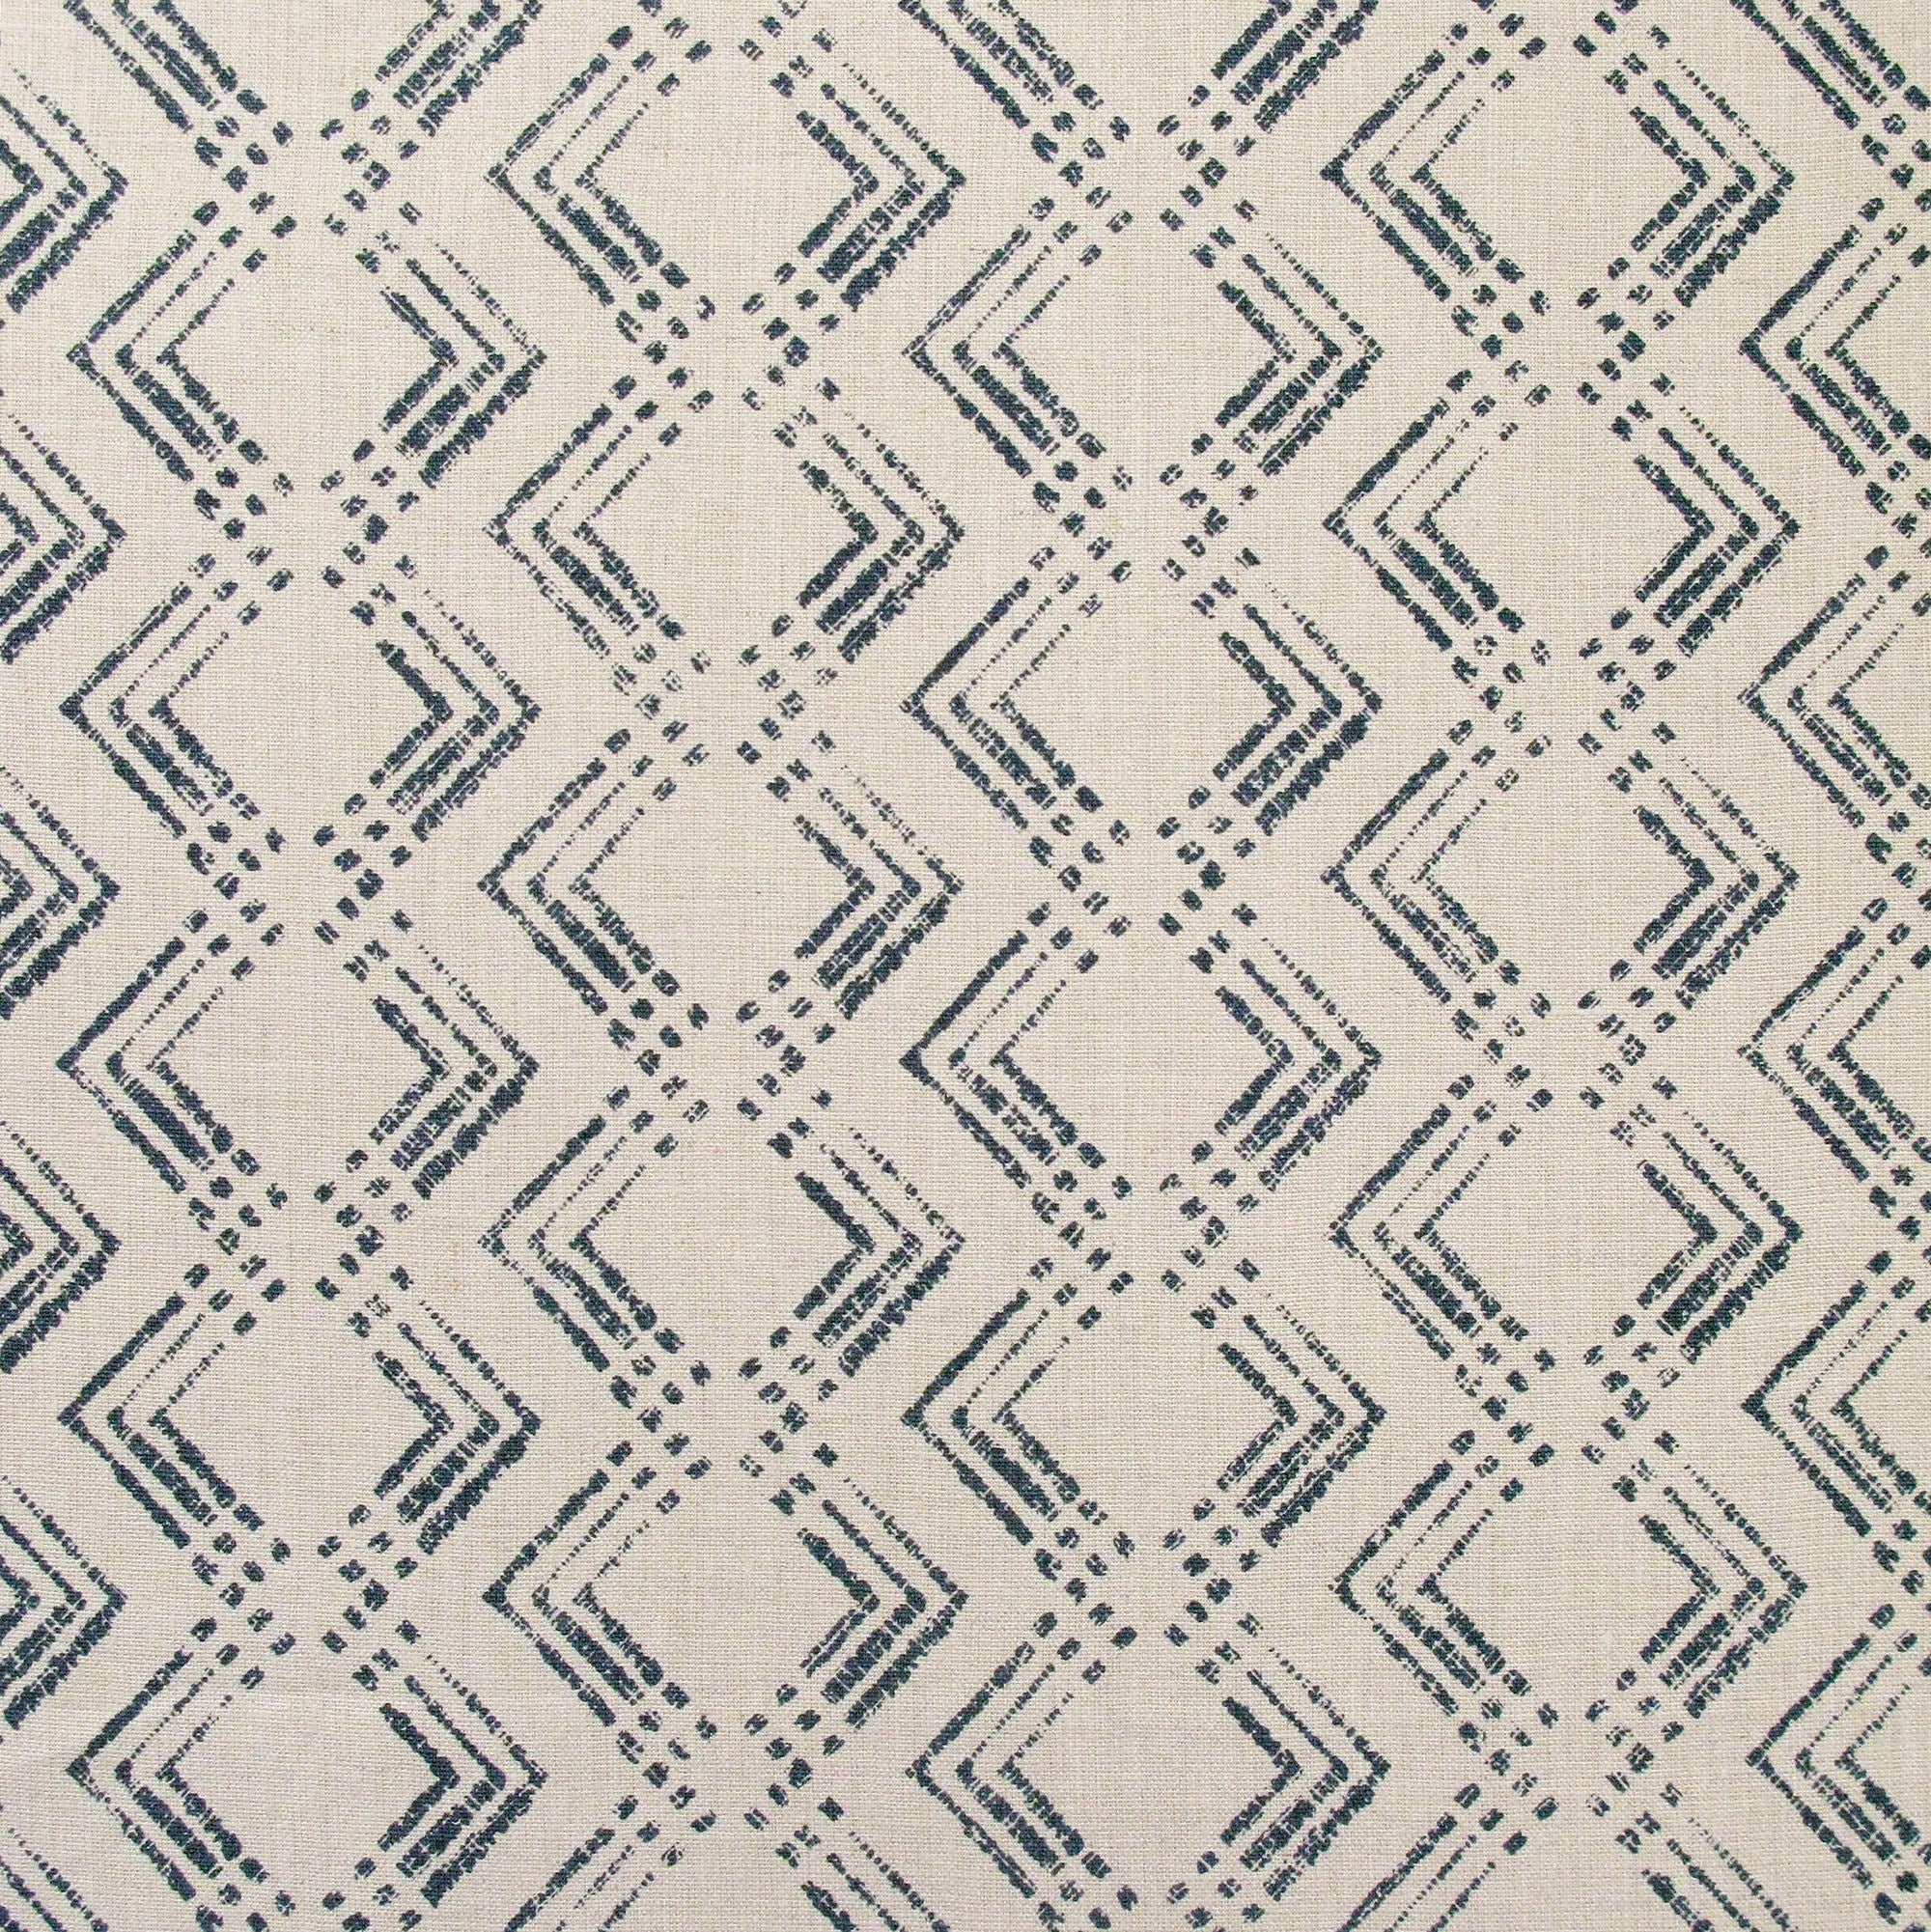 Fabric in a diamond grid pattern in navy on a tan field.